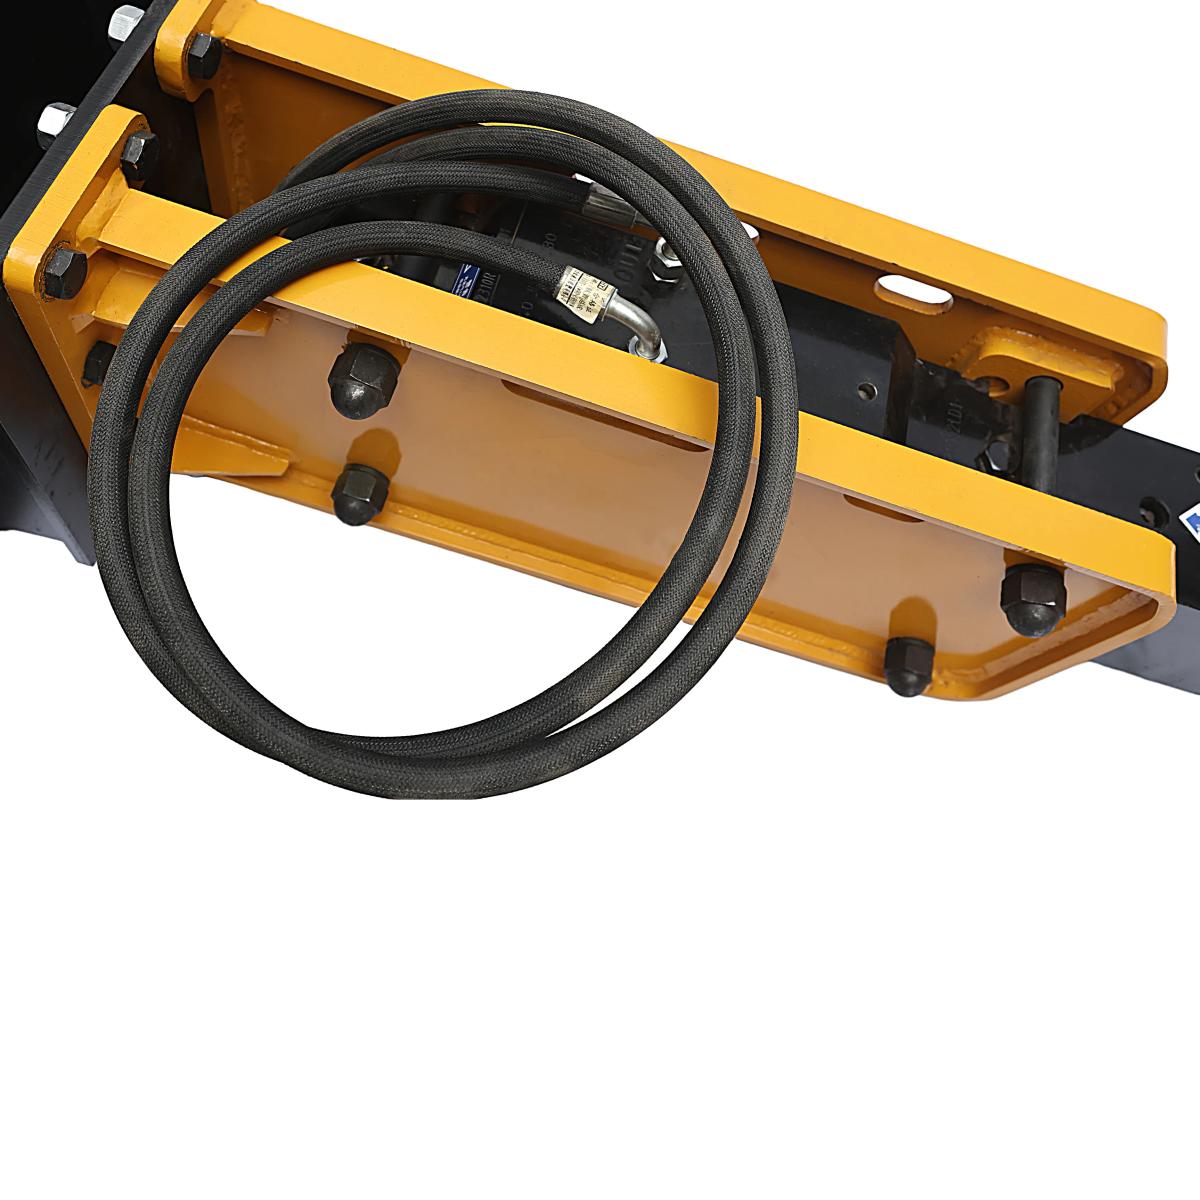 Value Industrial Skid Steer Hydraulic Breaker - highly durable